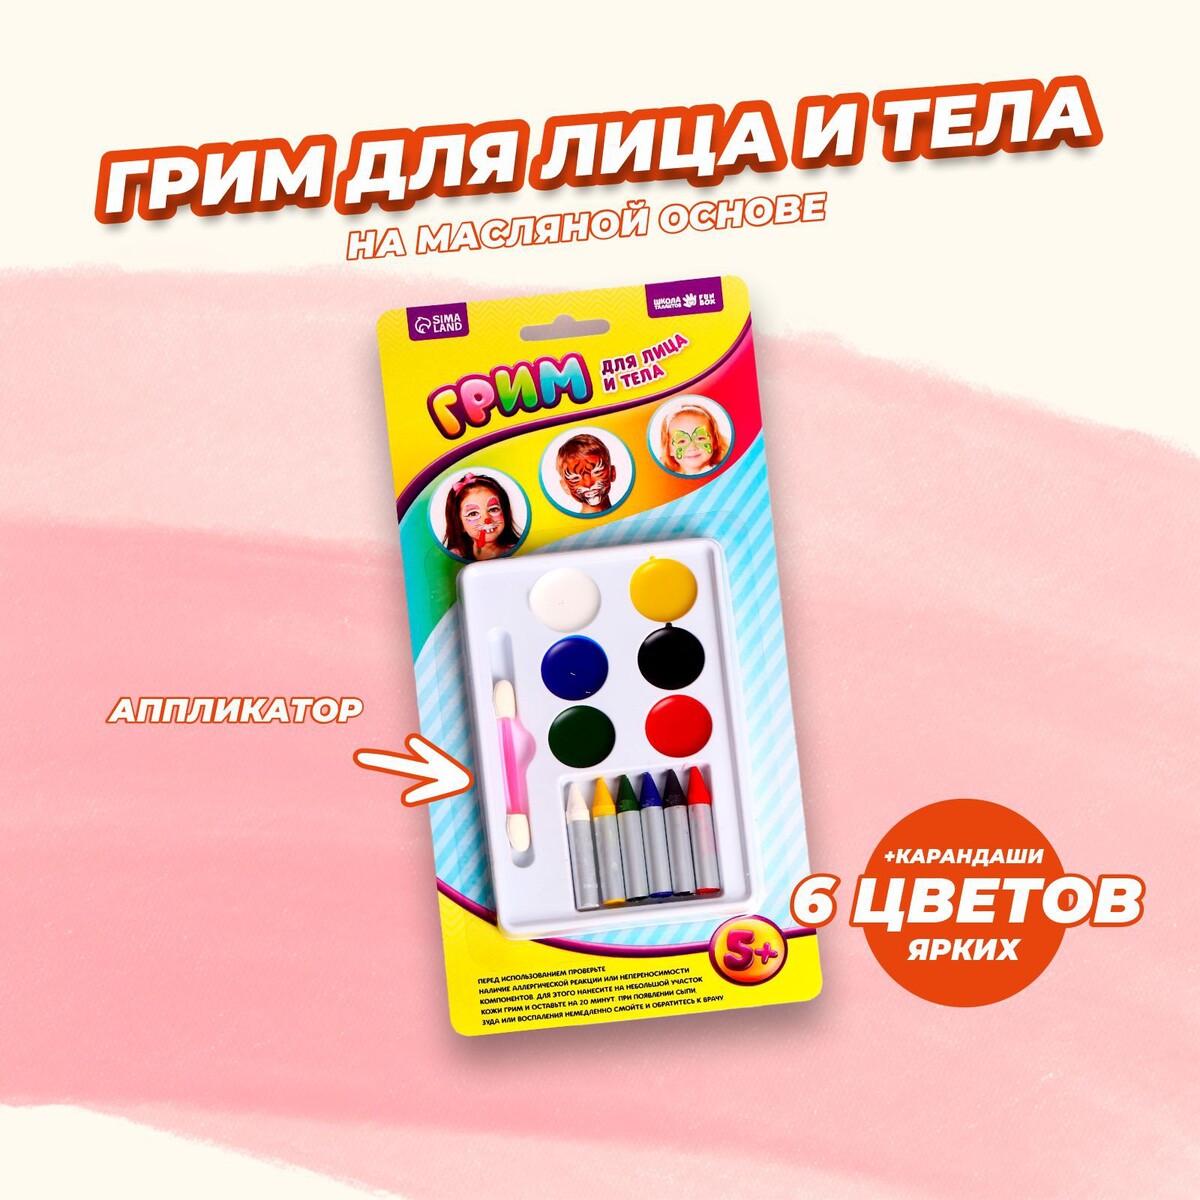 Грим для лица и тела, 6 цветов — 6 карандашей, 6 цветов для нанесения аппликатором кандид таб ваг 500мг 1 с аппликатором